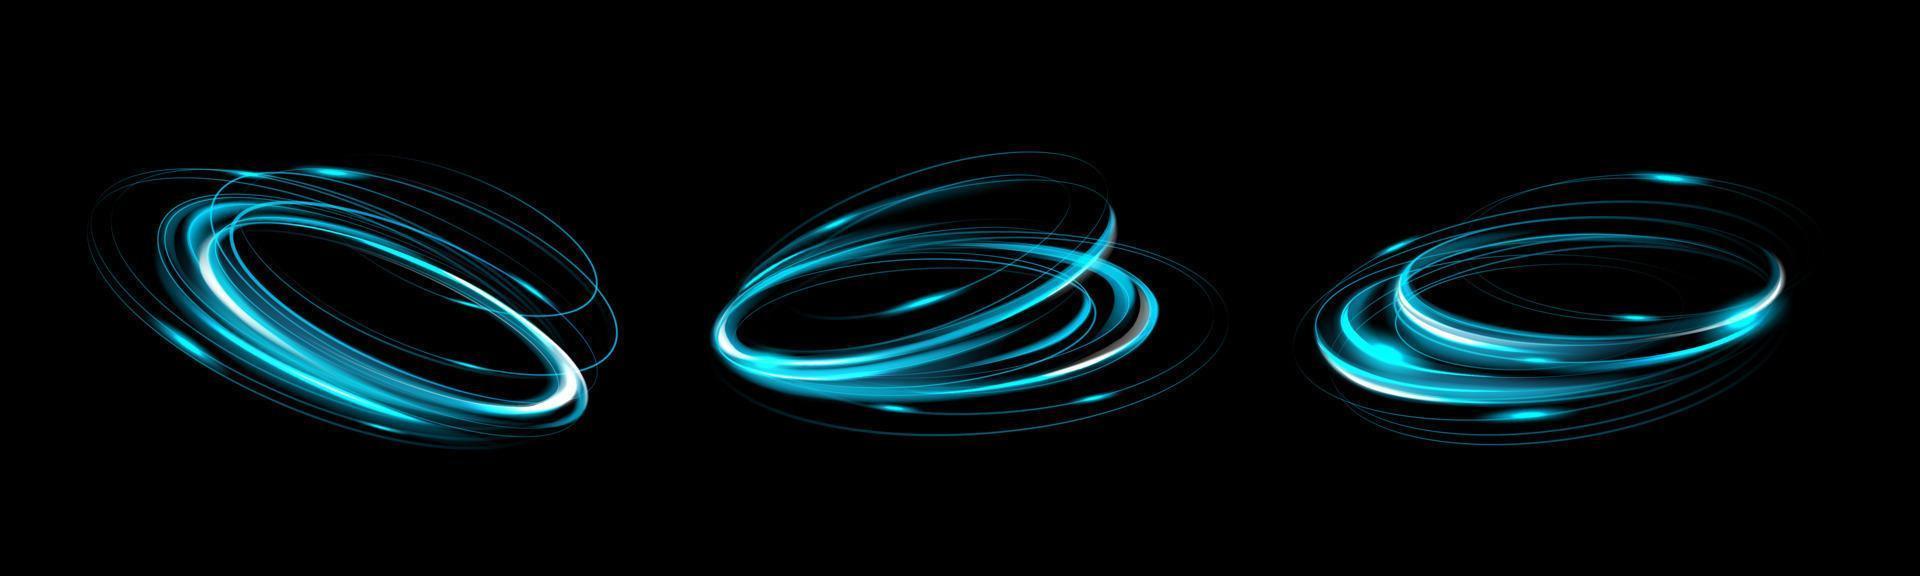 lysande blå cirklar realistisk uppsättning på svart vektor